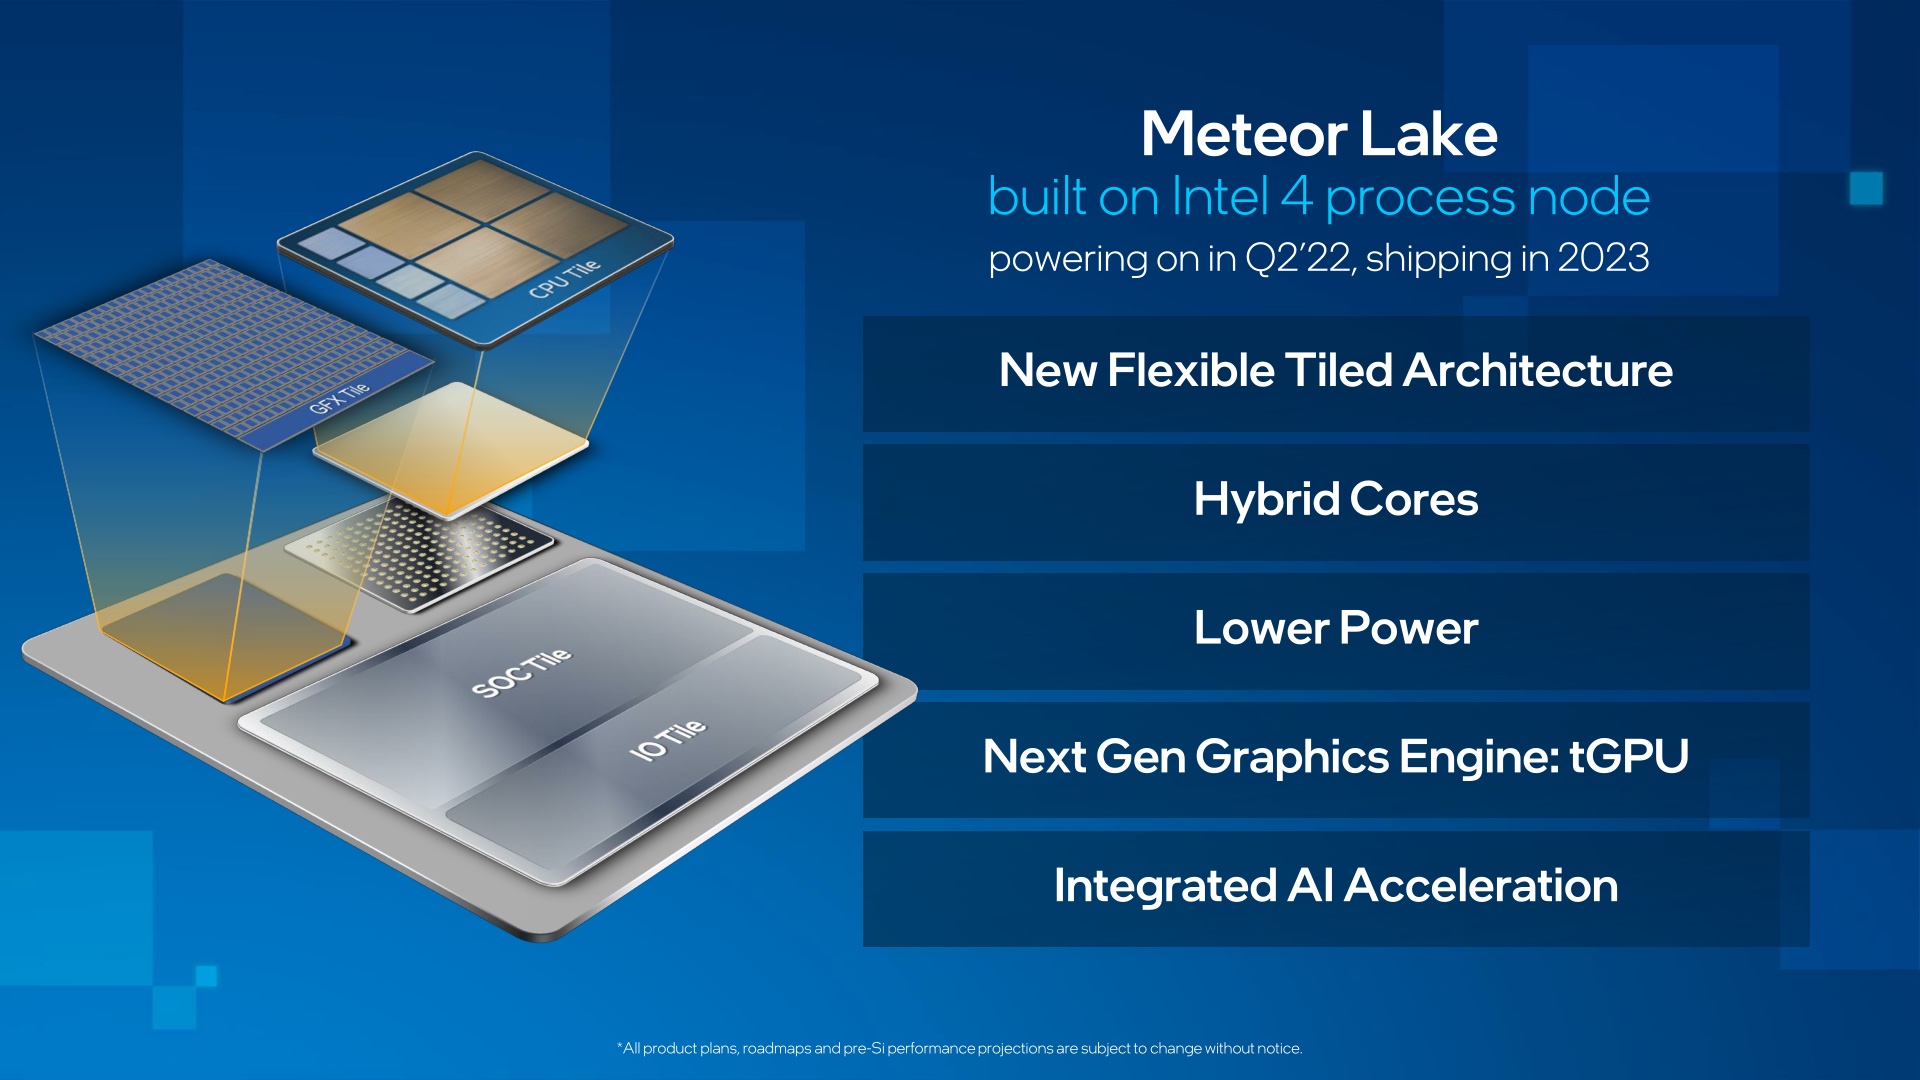 Meteor Lakeは、チップベースのアプローチを採用したIntel初のコンシューマー向けCPUとなる。